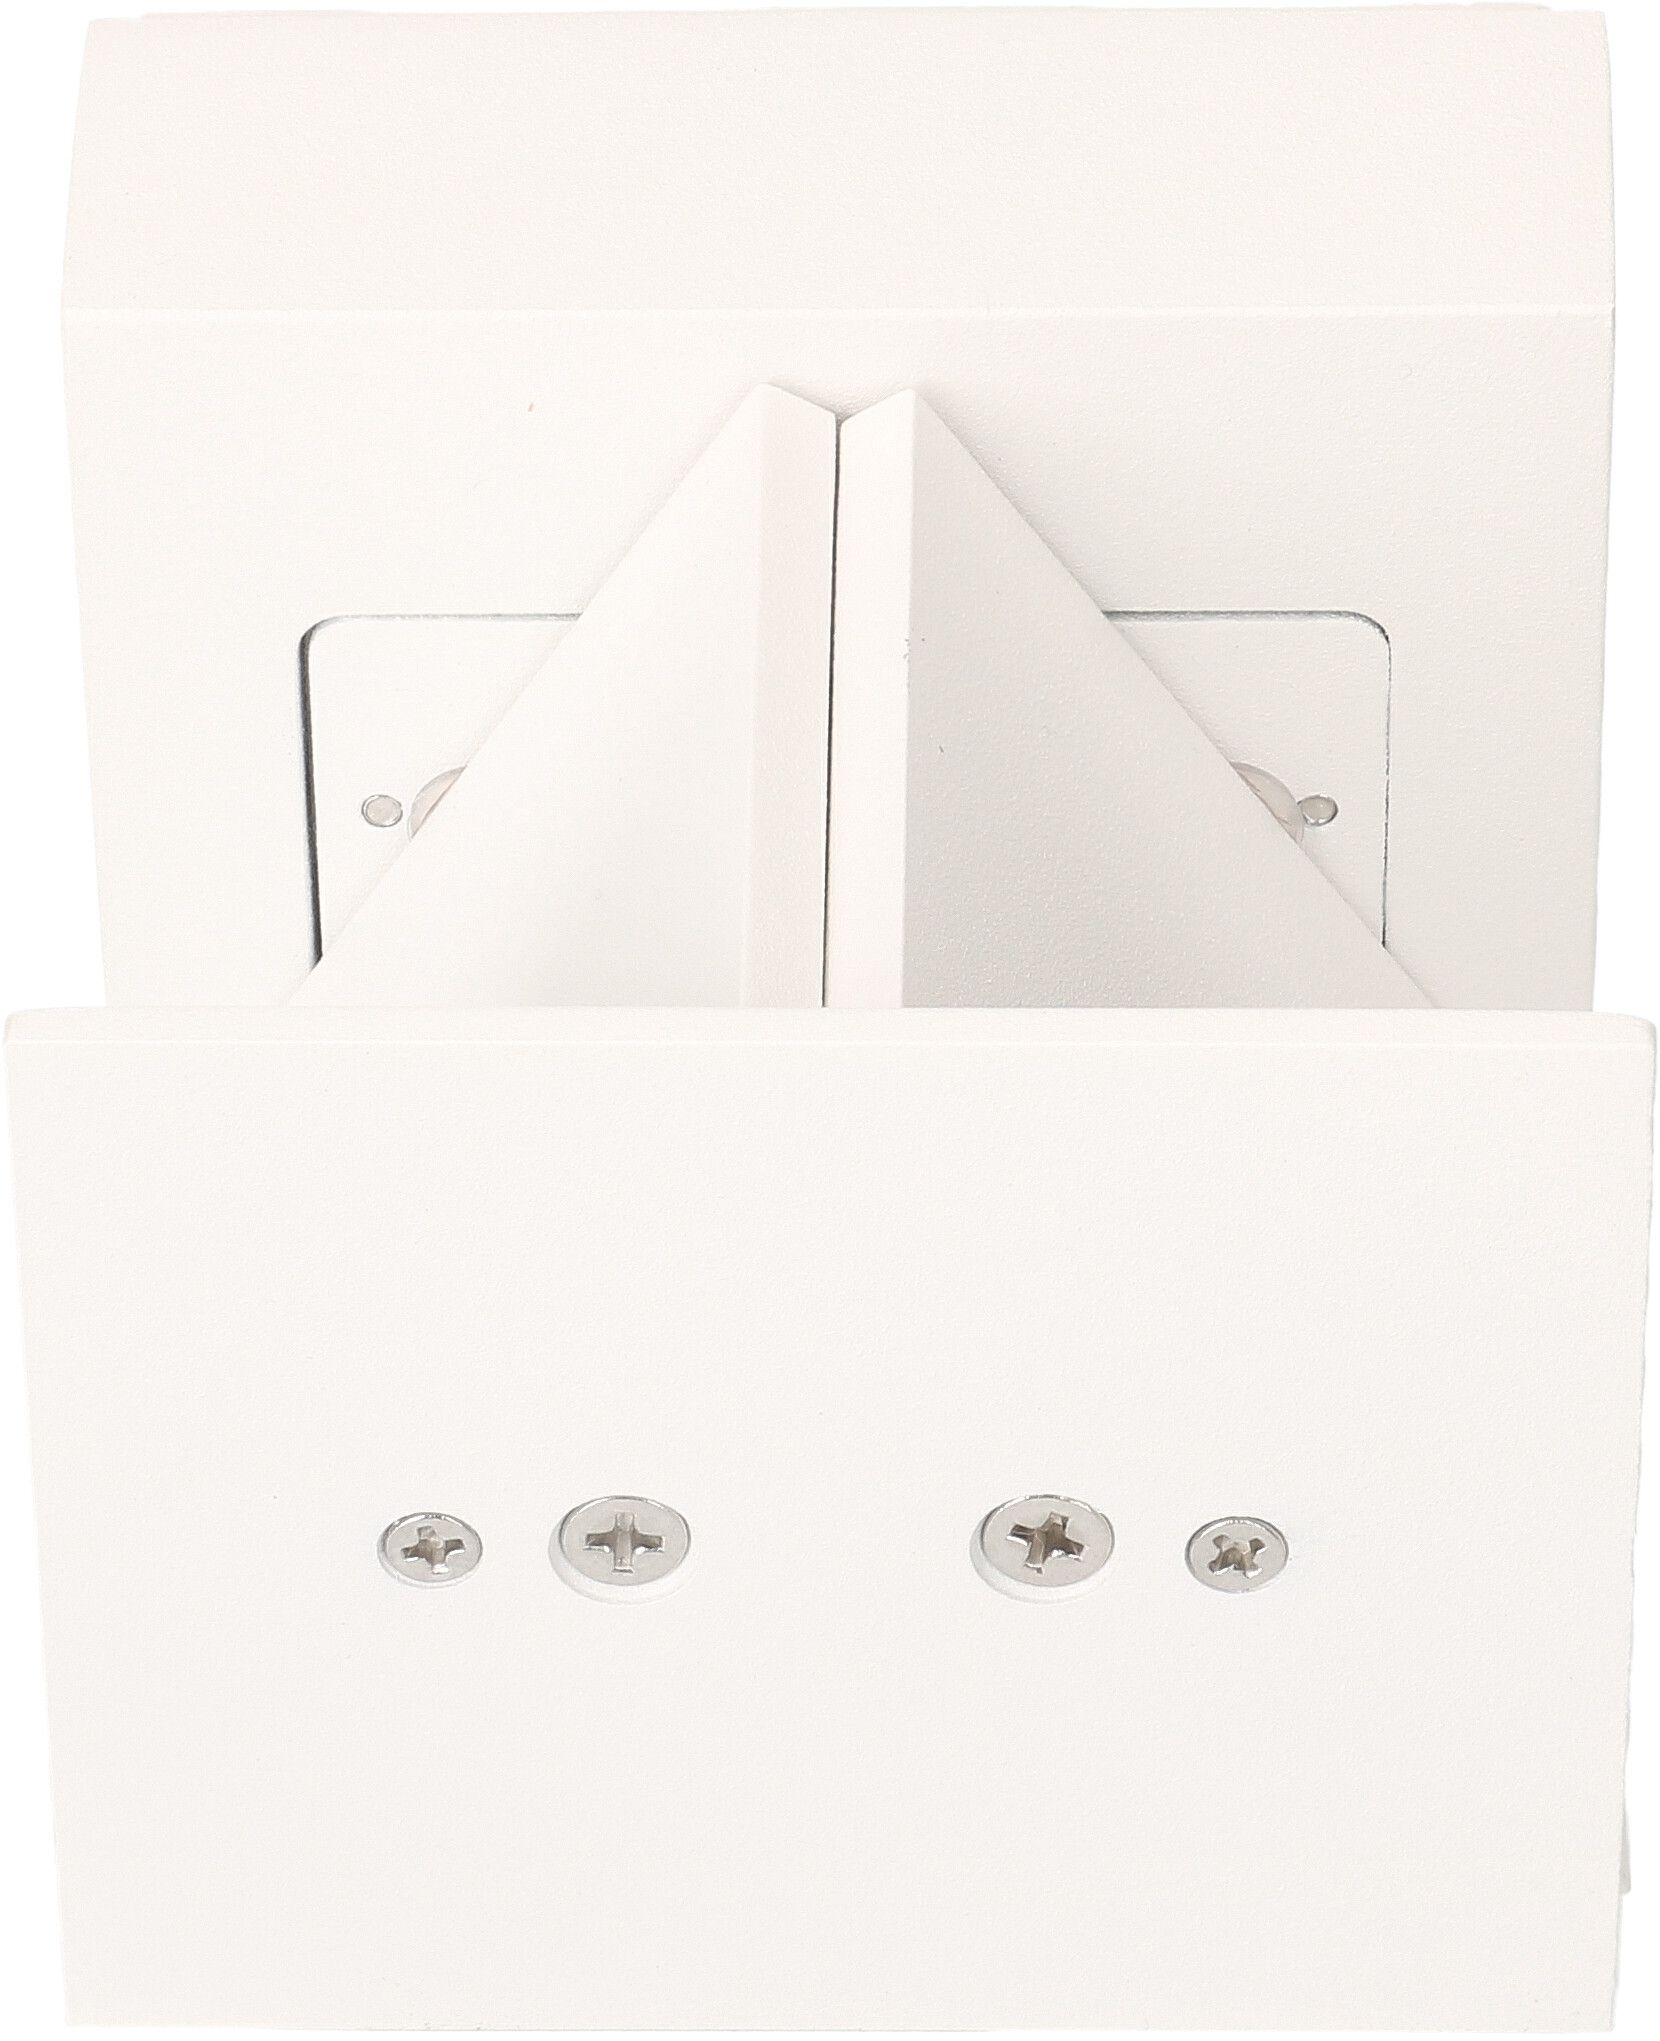 LED Wall Lamp "BIG BOX" white RAL9003